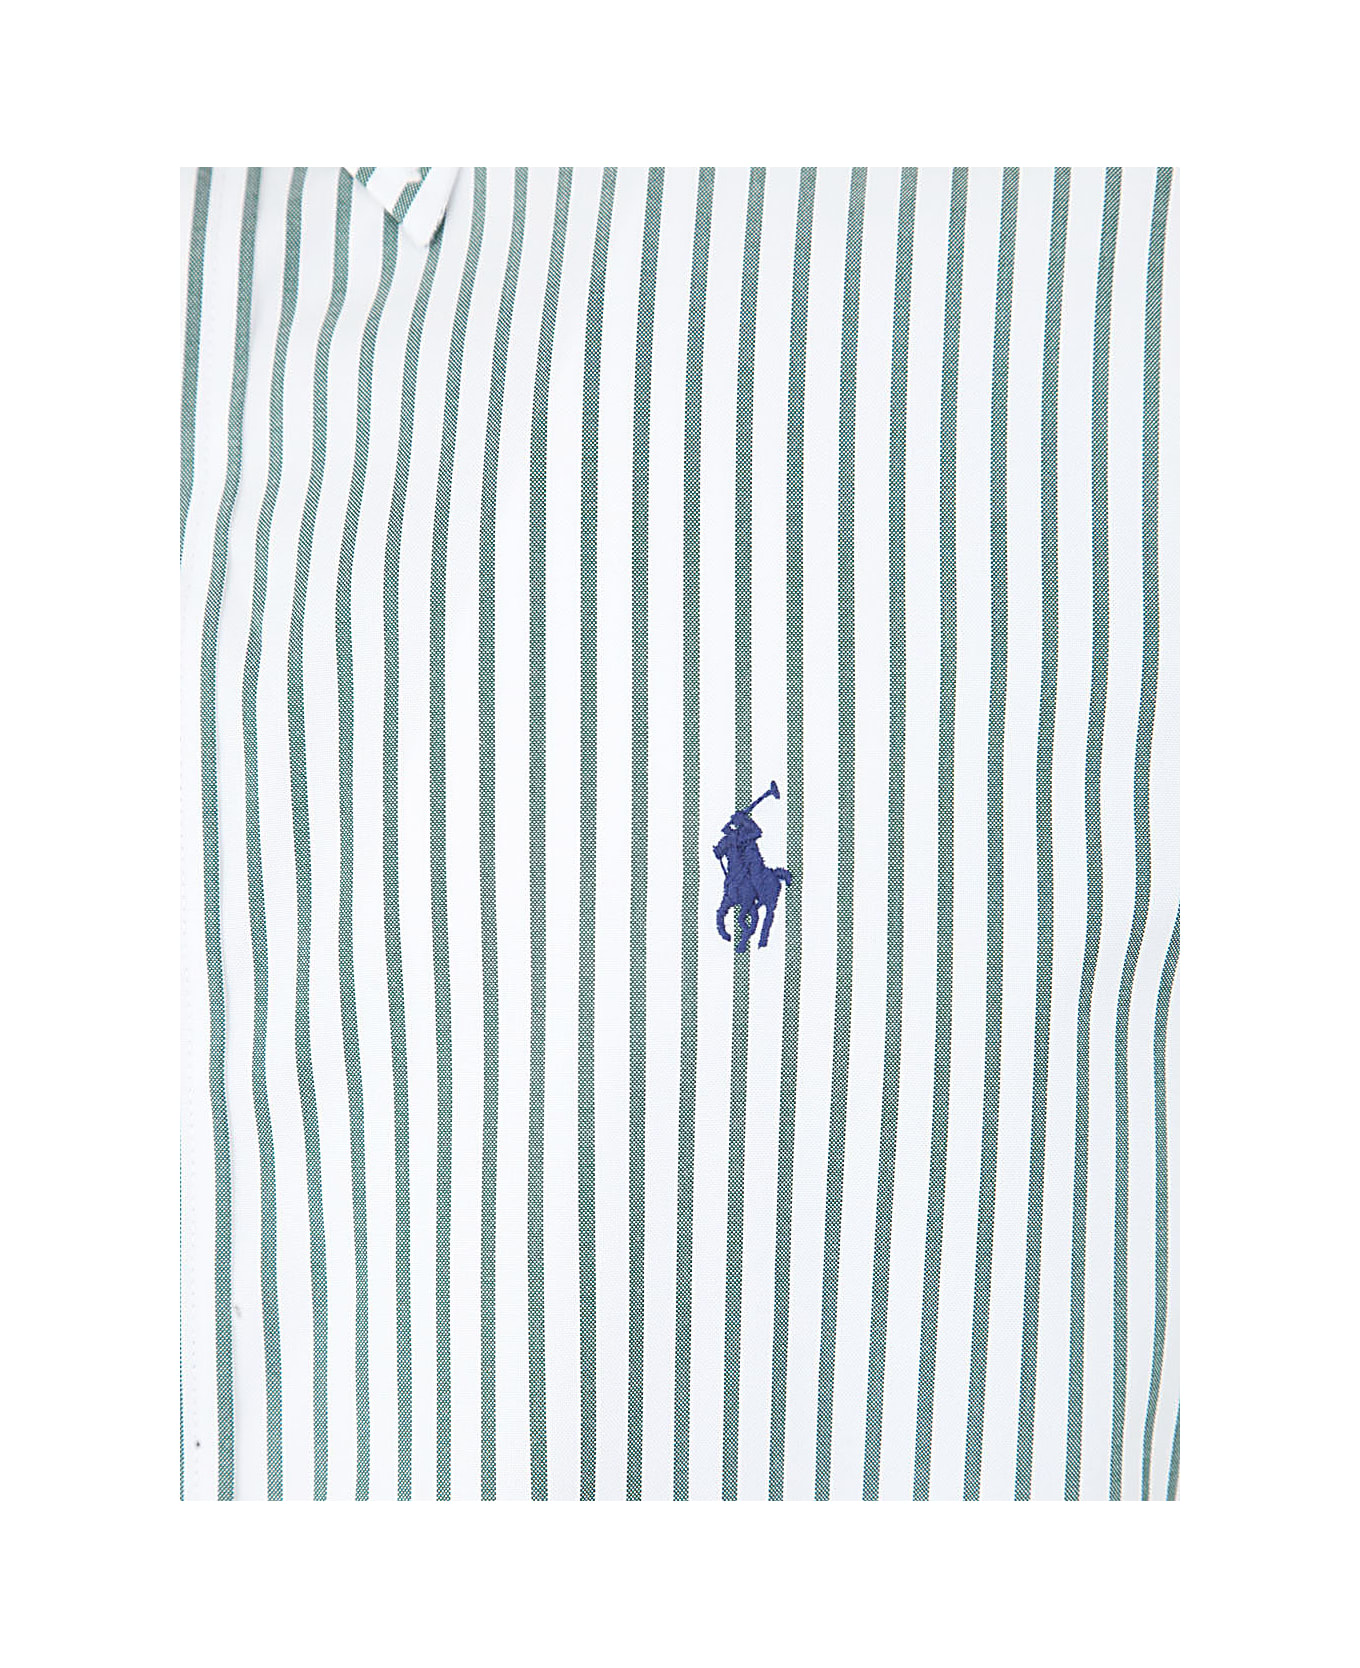 Polo Ralph Lauren Popeline Long Sleeve Dress Shirt - C Pine White